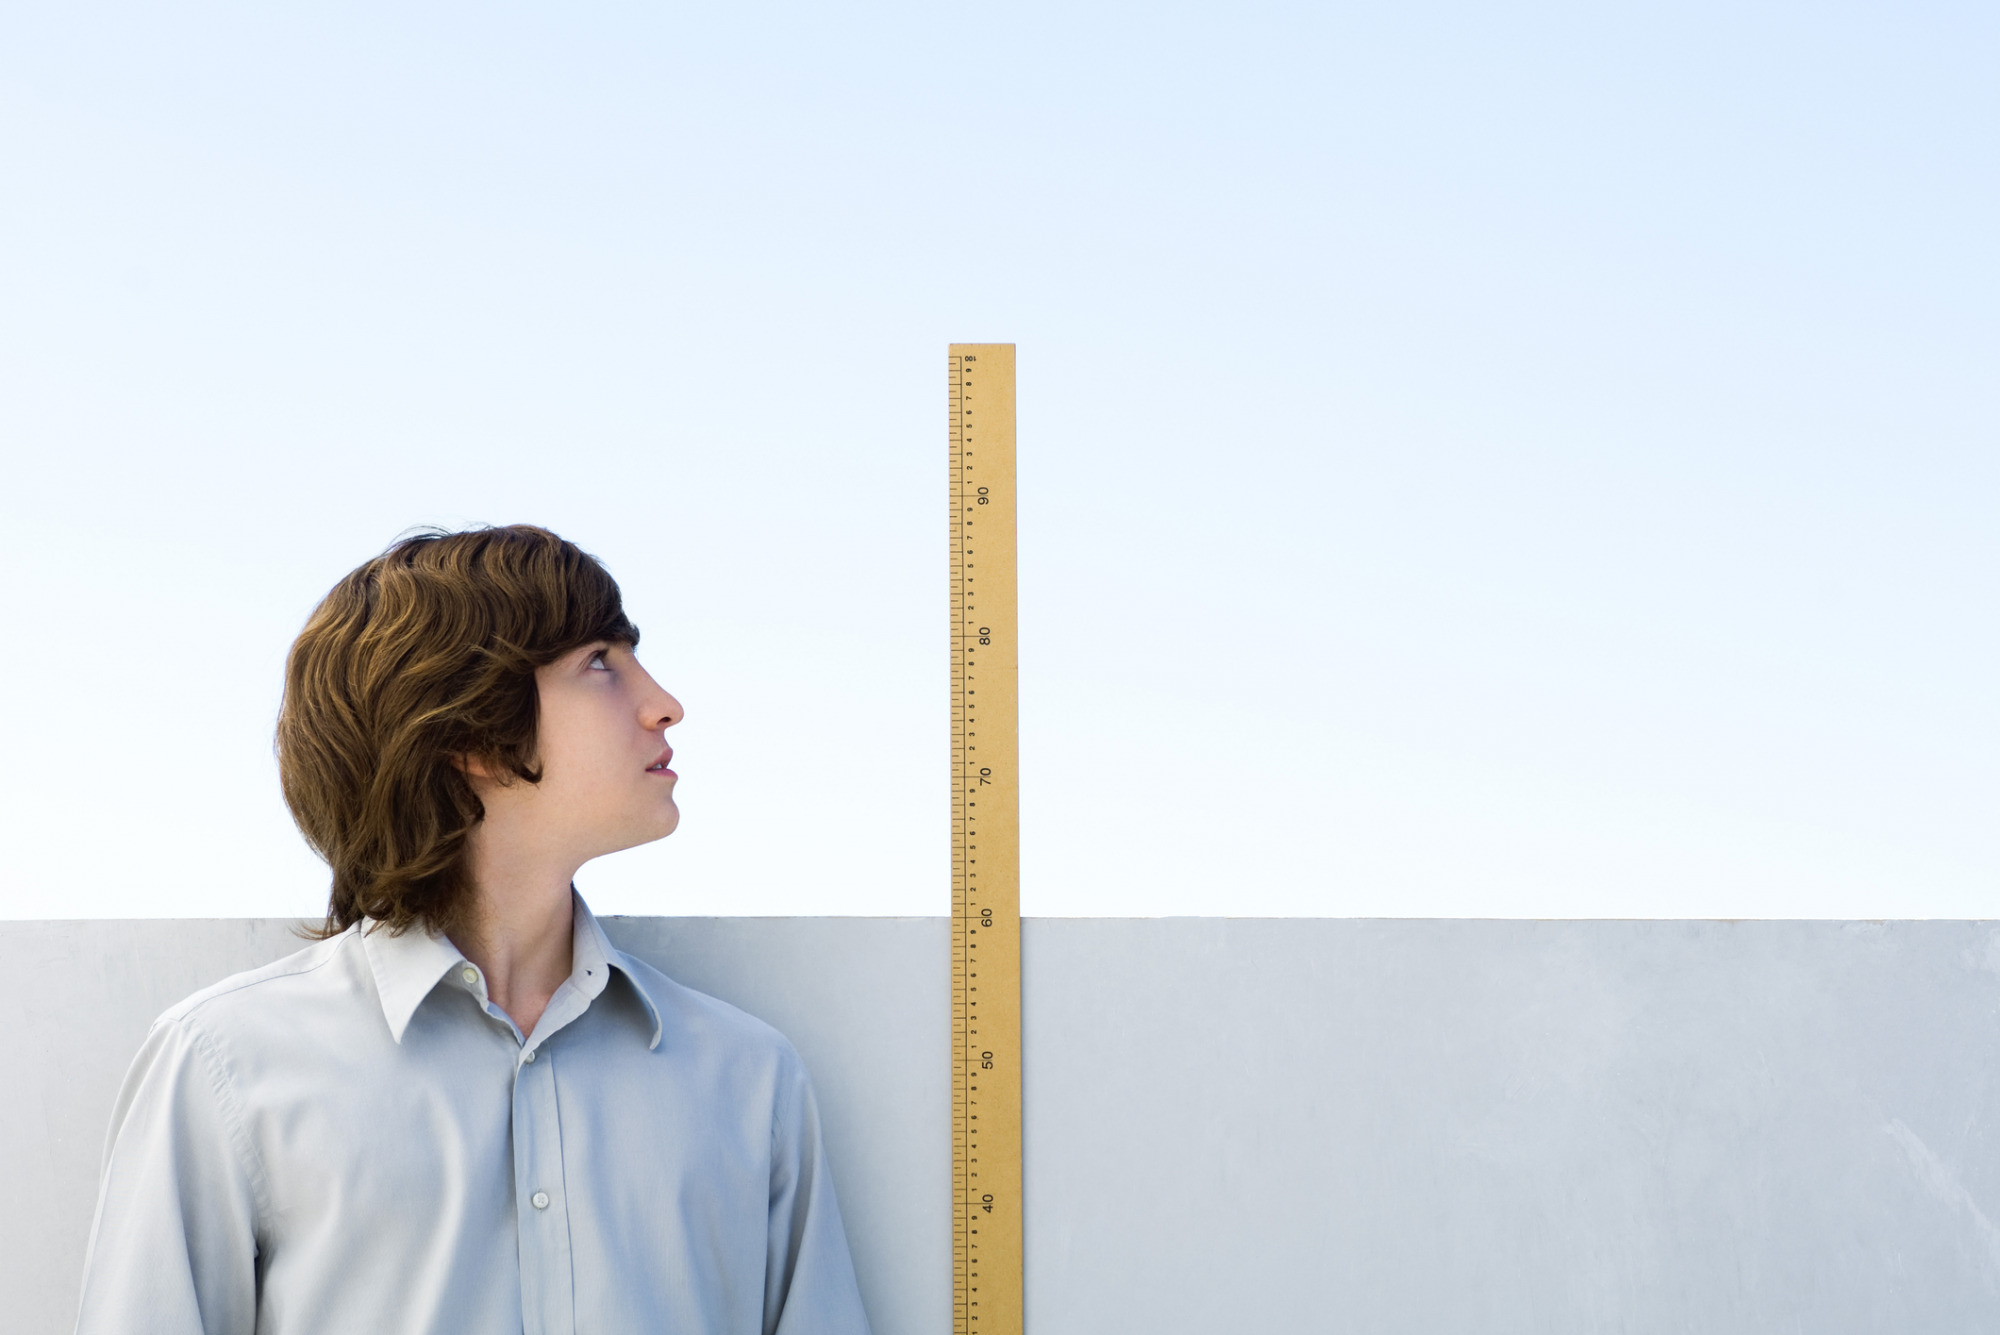 Tall time. Измерение роста человека. Измерить рост. Человек меряет. Подросток измеряет рост.